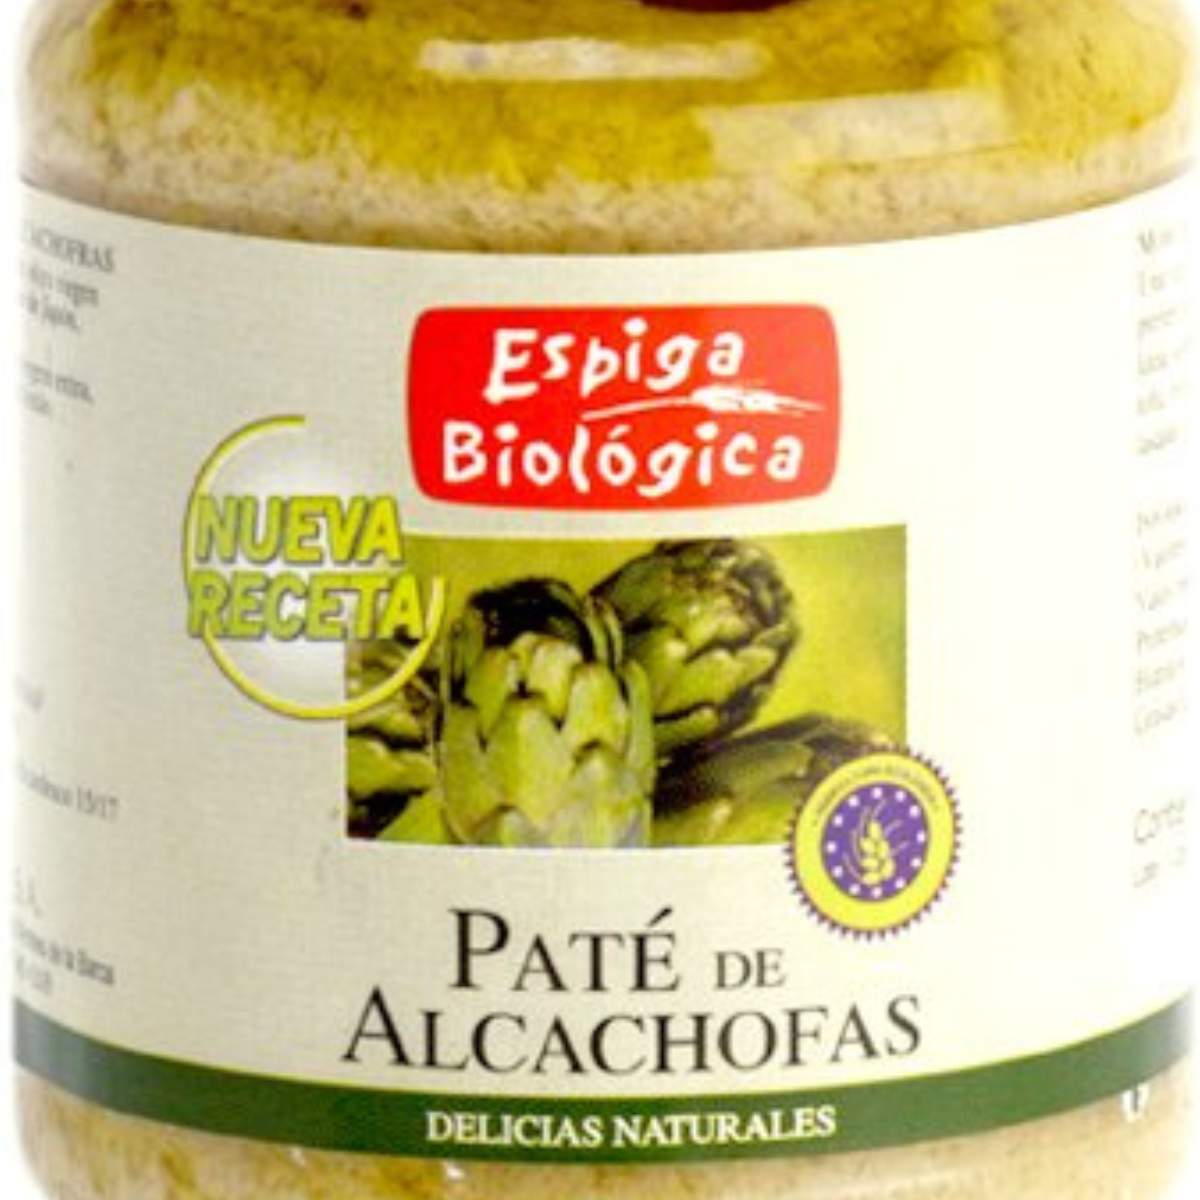 Paté de alcachofas